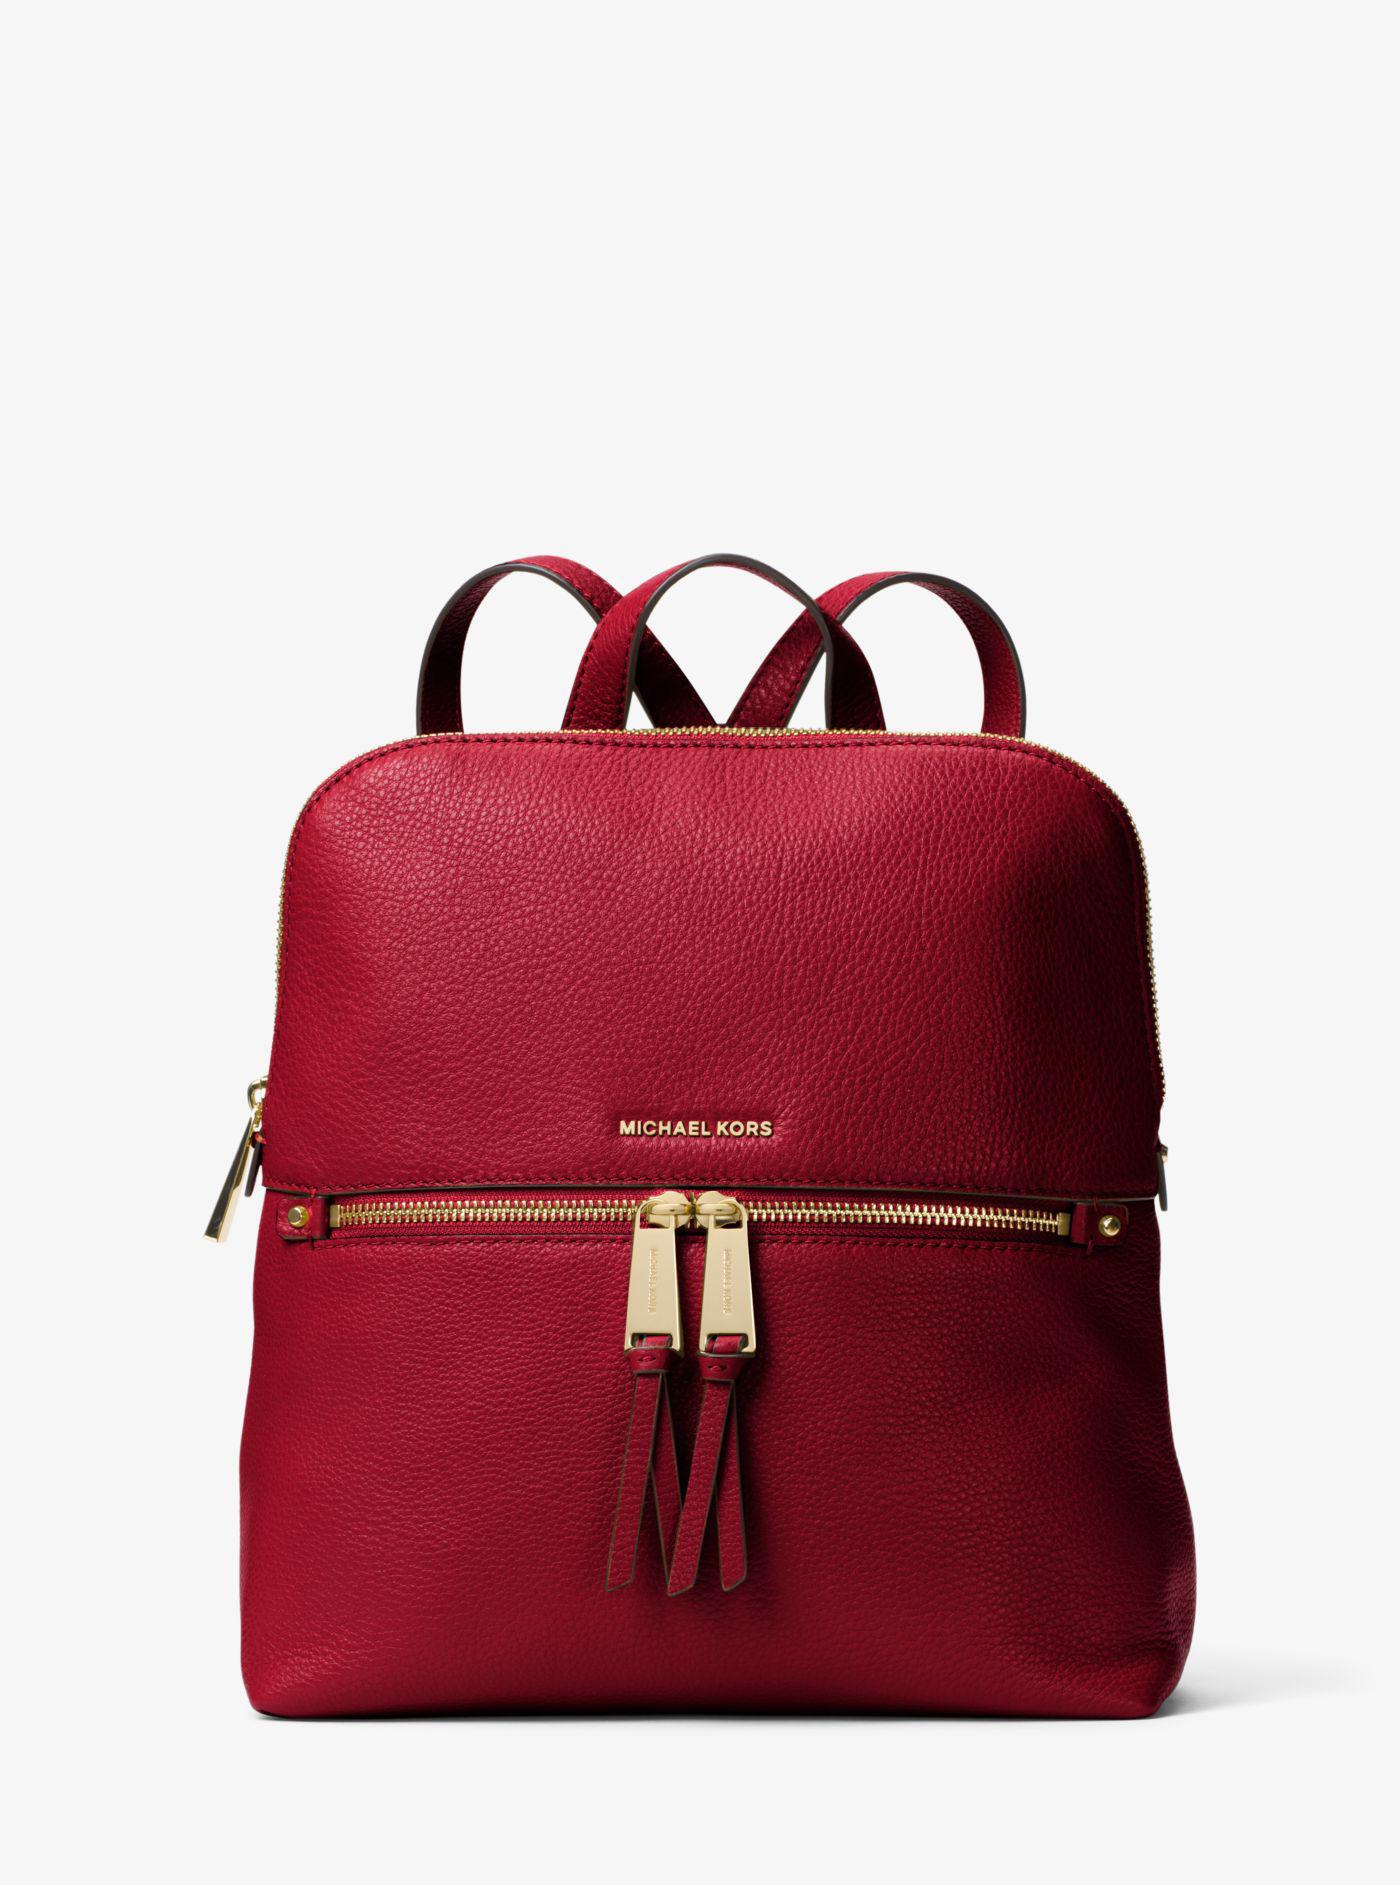 Lyst - Michael Kors Rhea Medium Slim Leather Backpack in Red